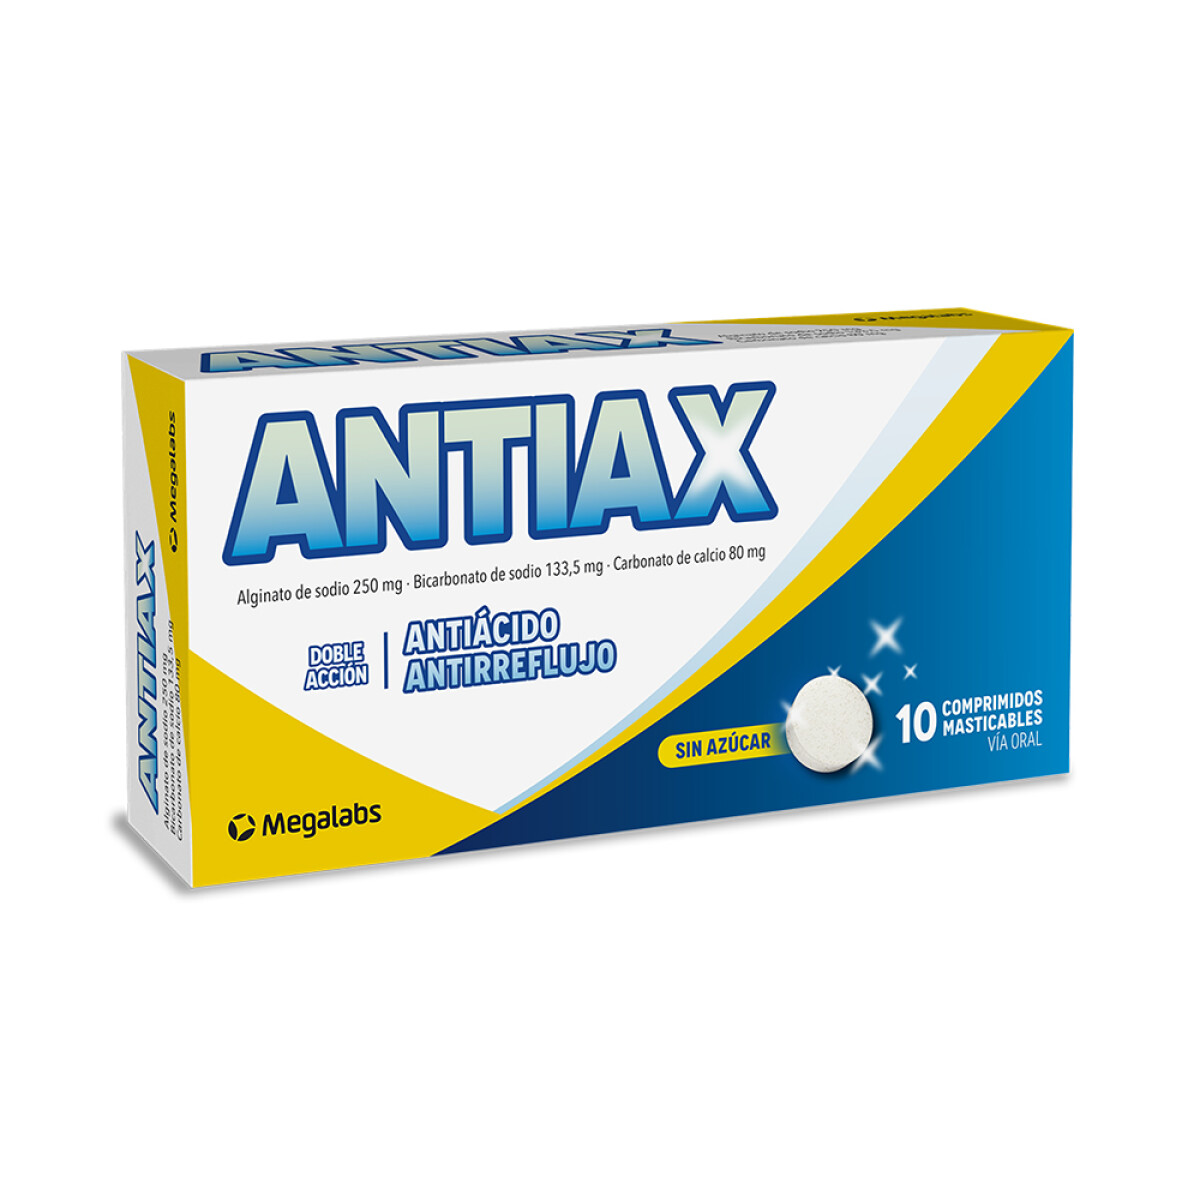 Antiax 10 Comprimido Masticables 